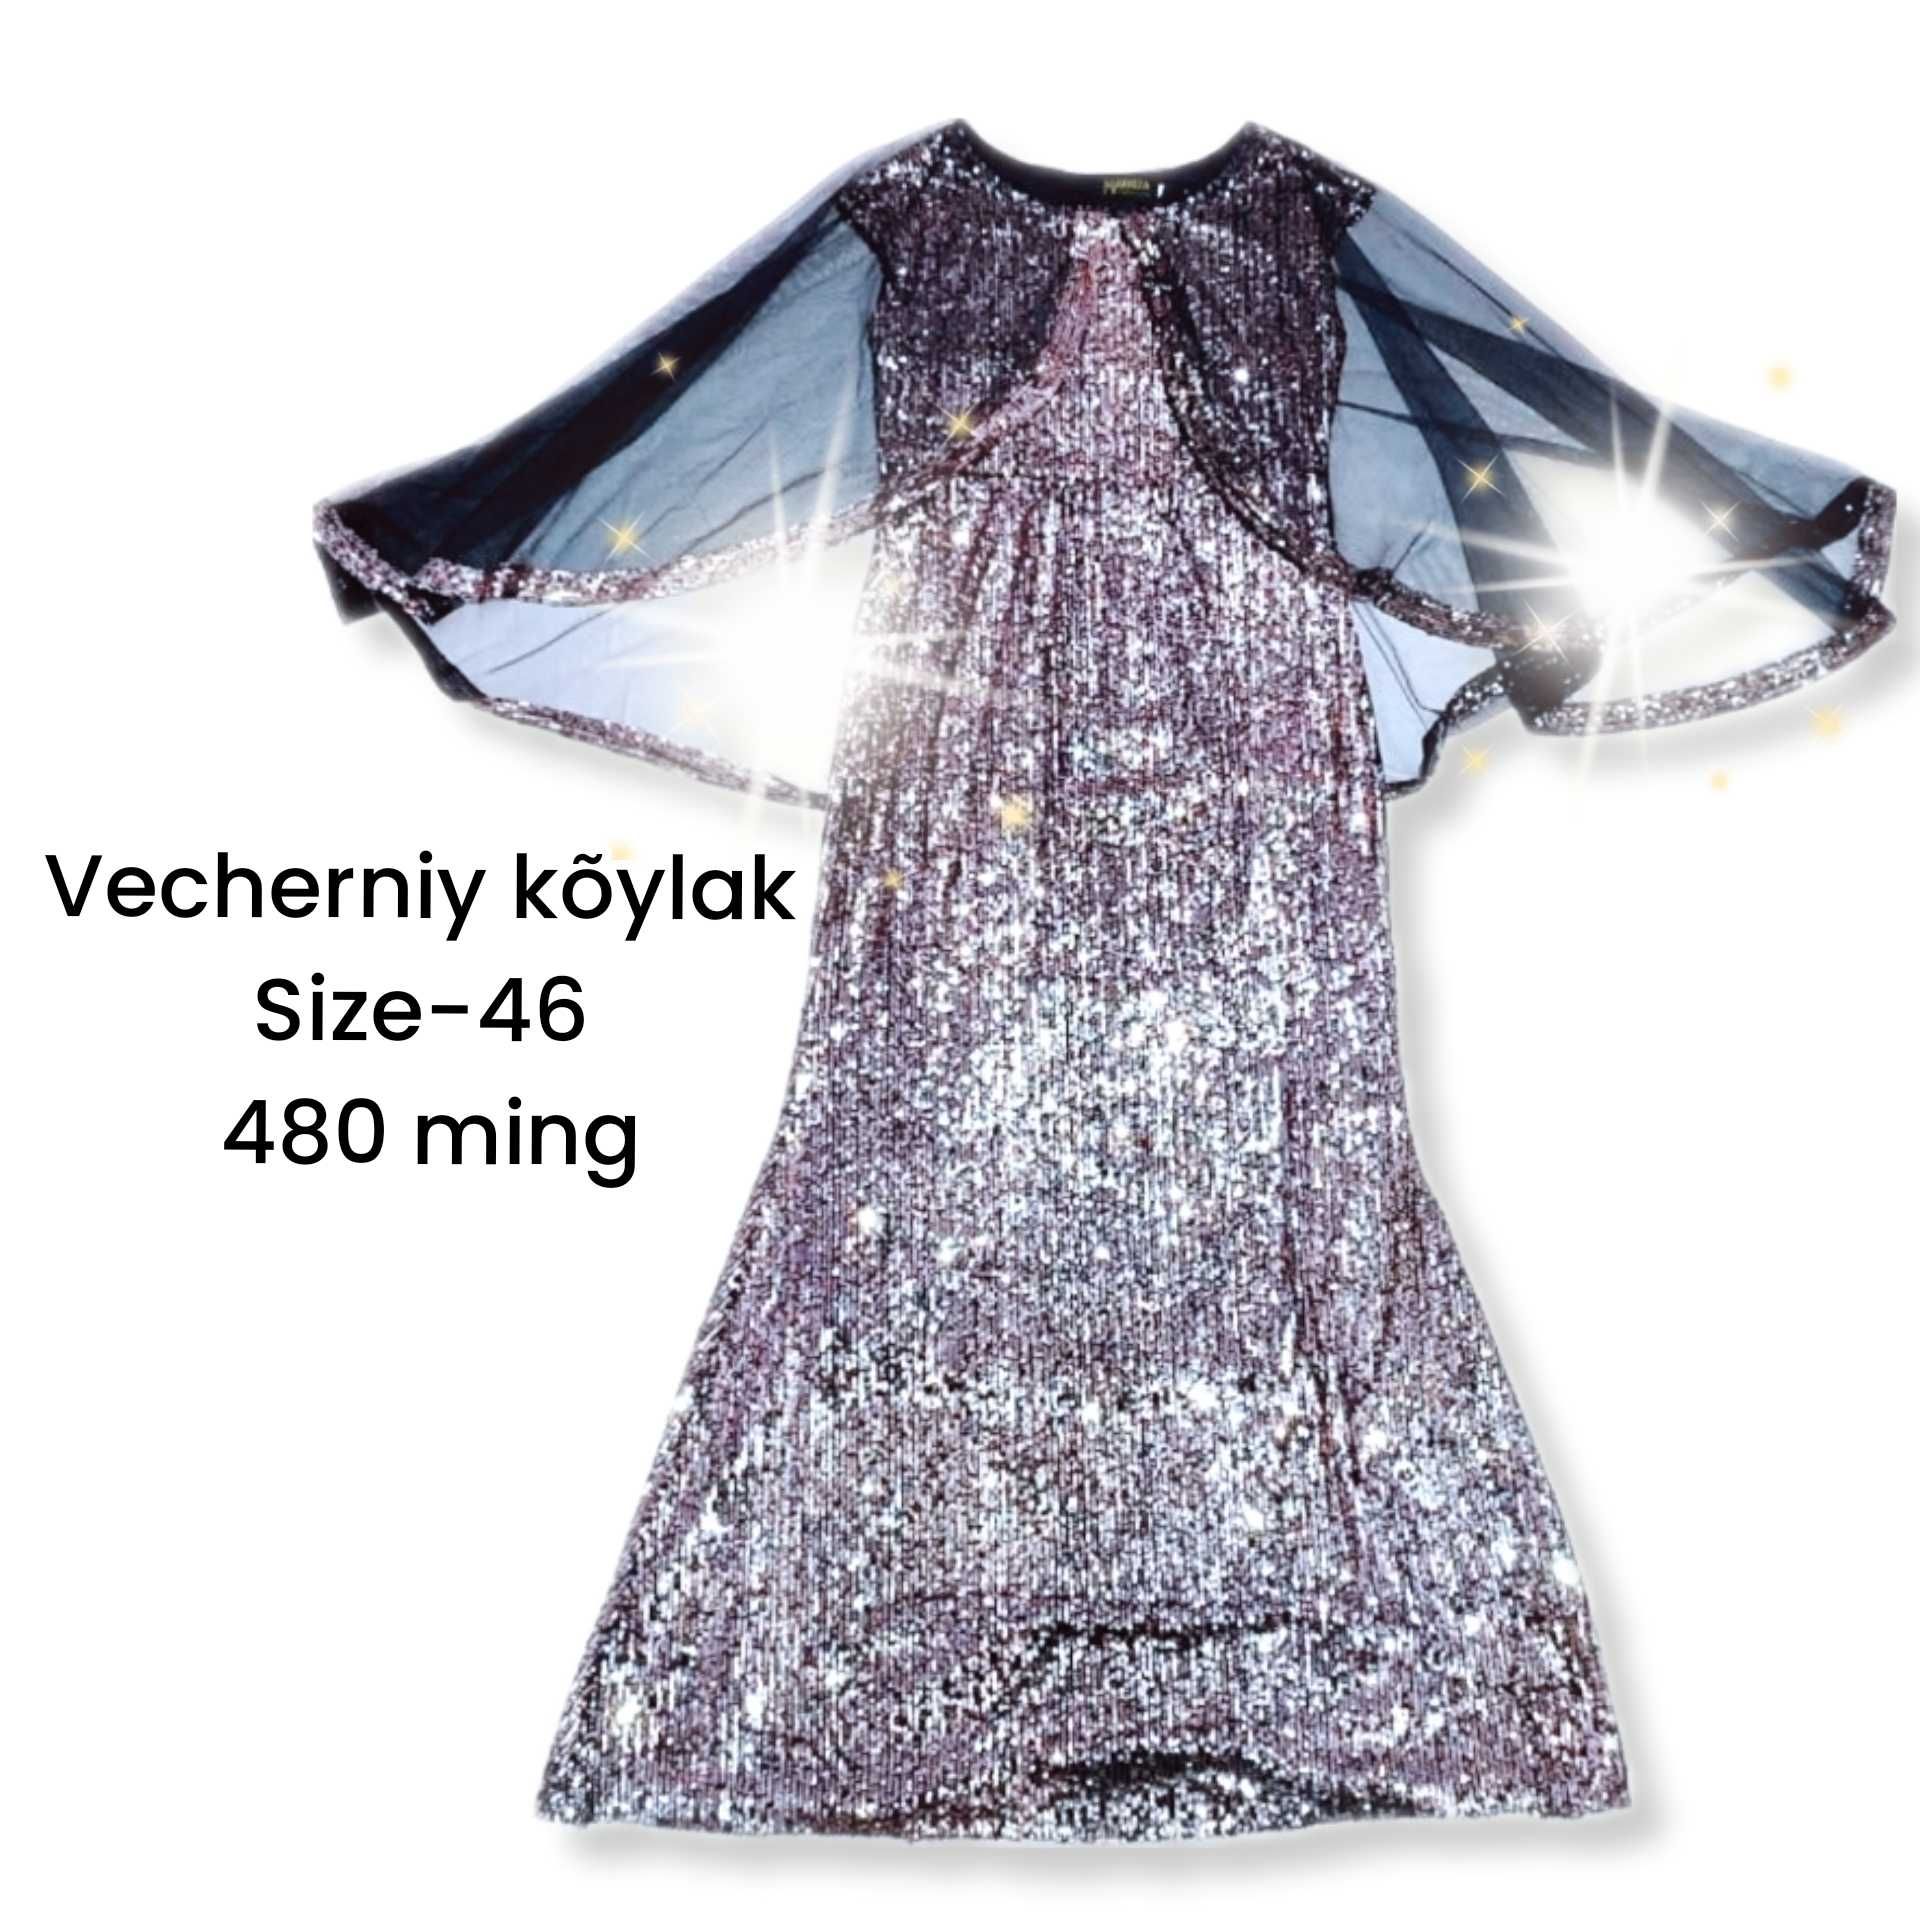 Vecherniy ko'ylaklar (вечернее платье) супер цена